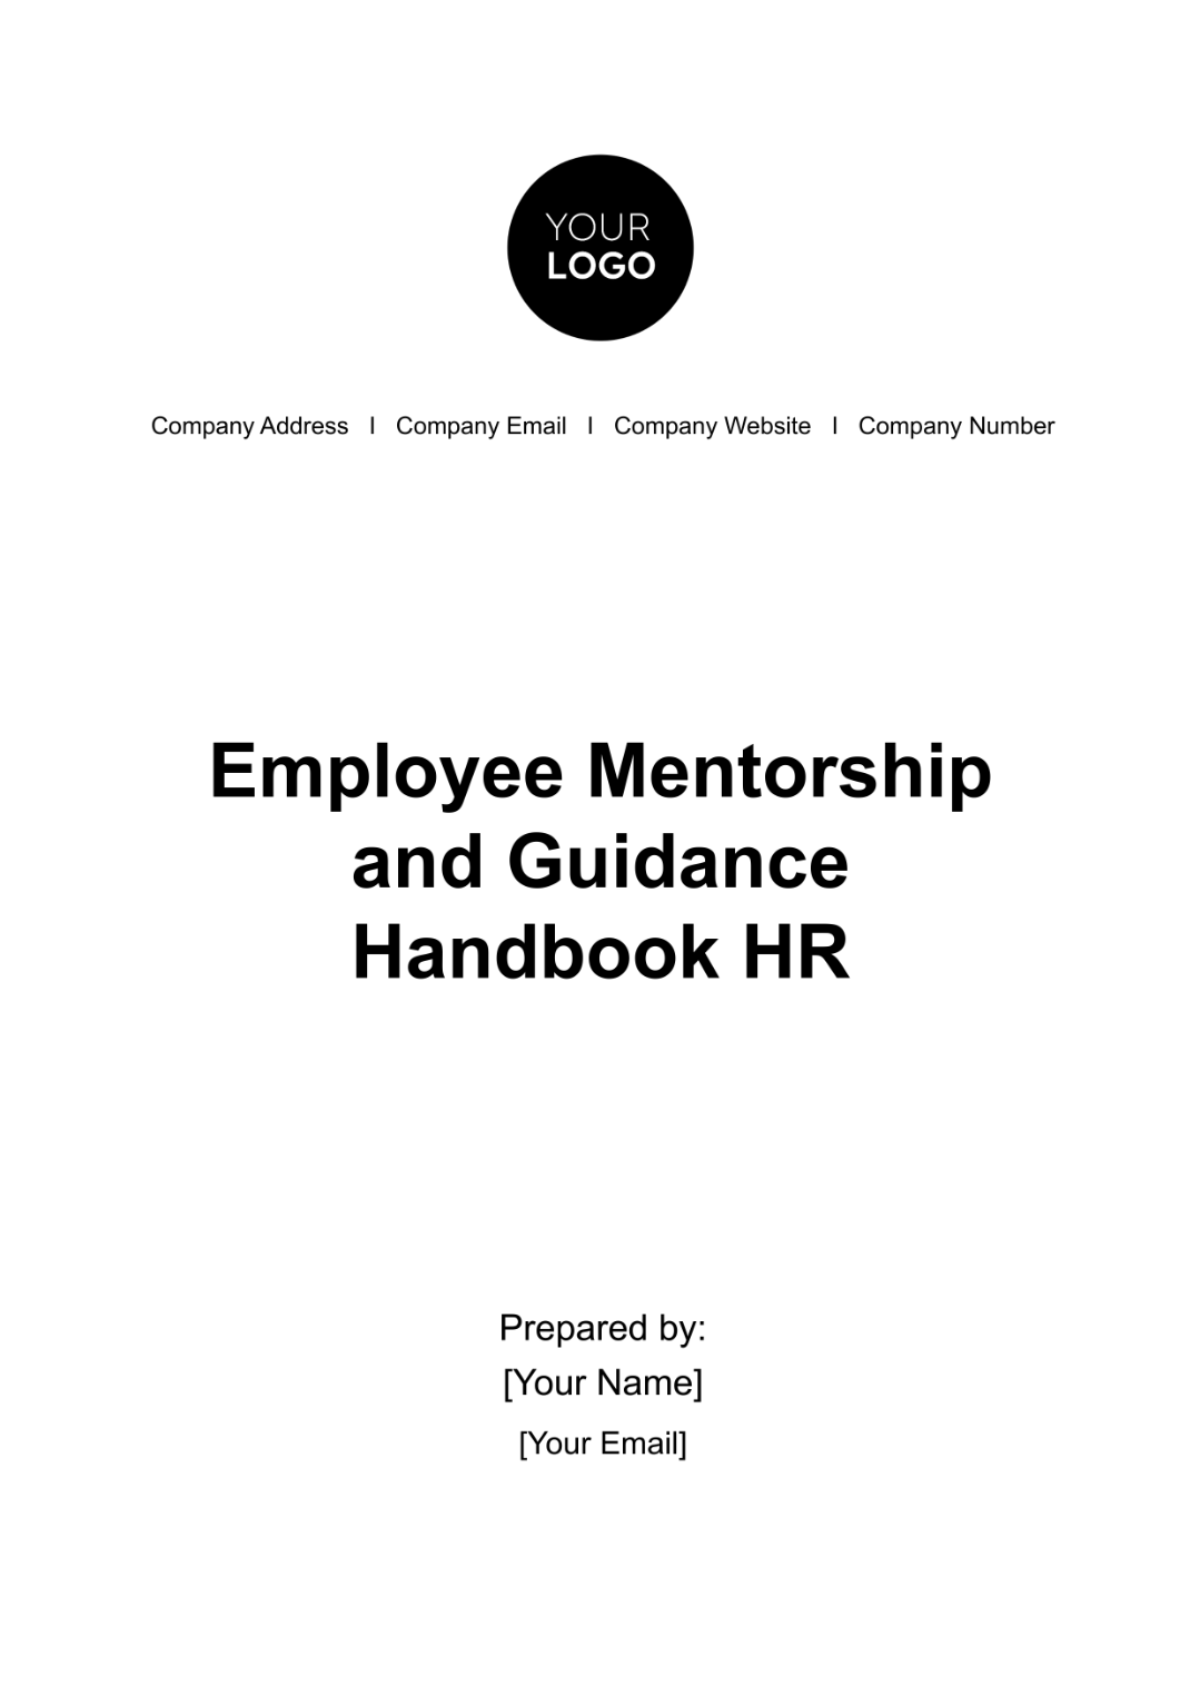 Employee Mentorship and Guidance Handbook HR Template